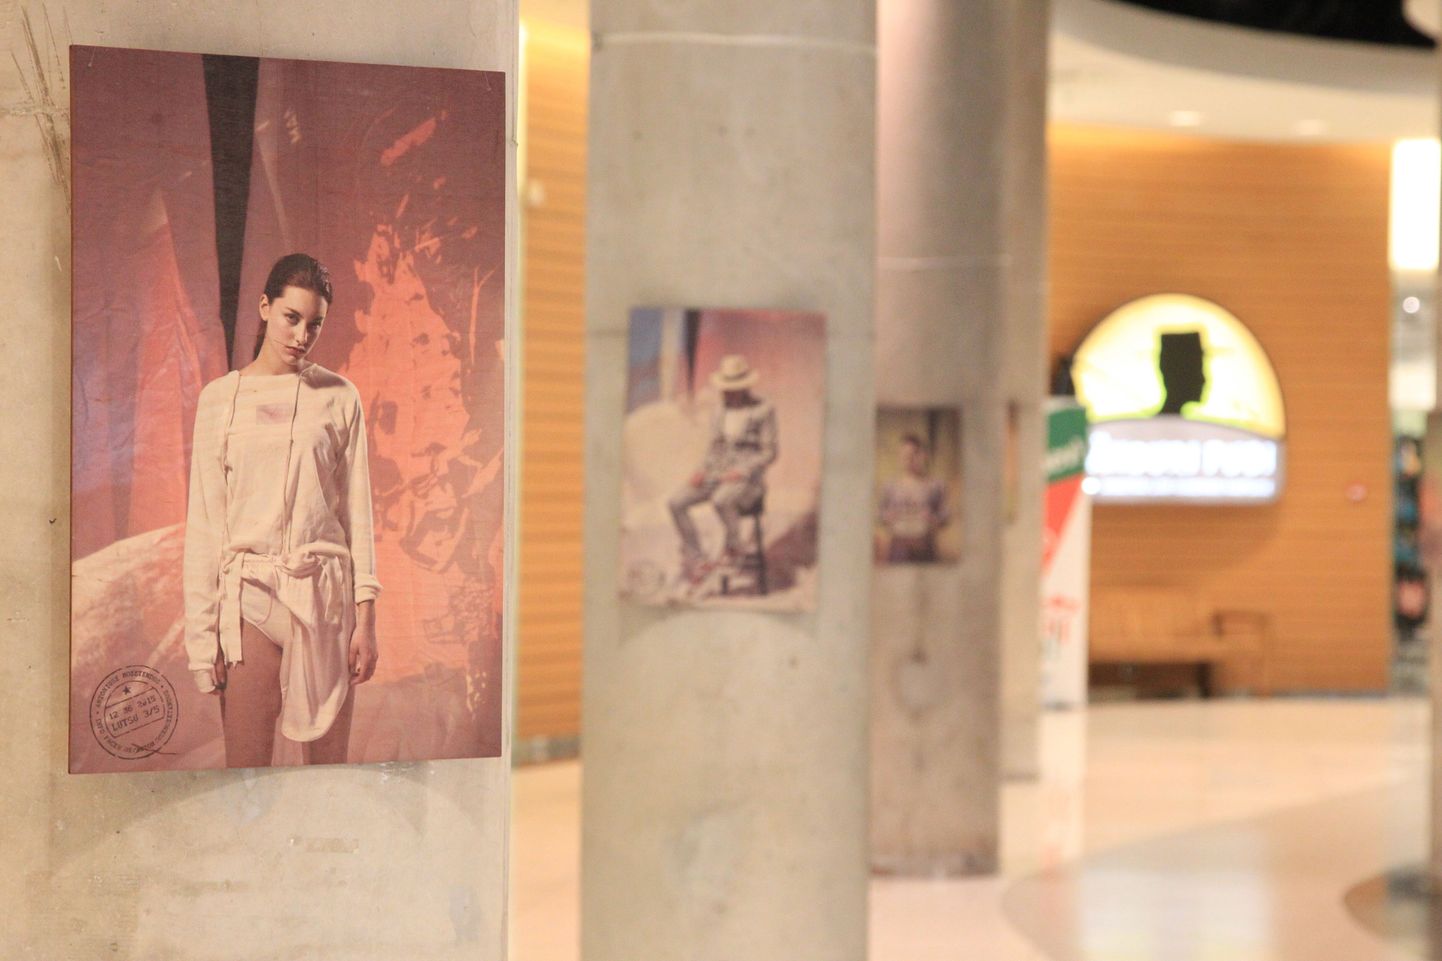 Finalistide kollektsioonifotode näitus Tasku keskuse teisel korrusel on avatud 22. juunini.